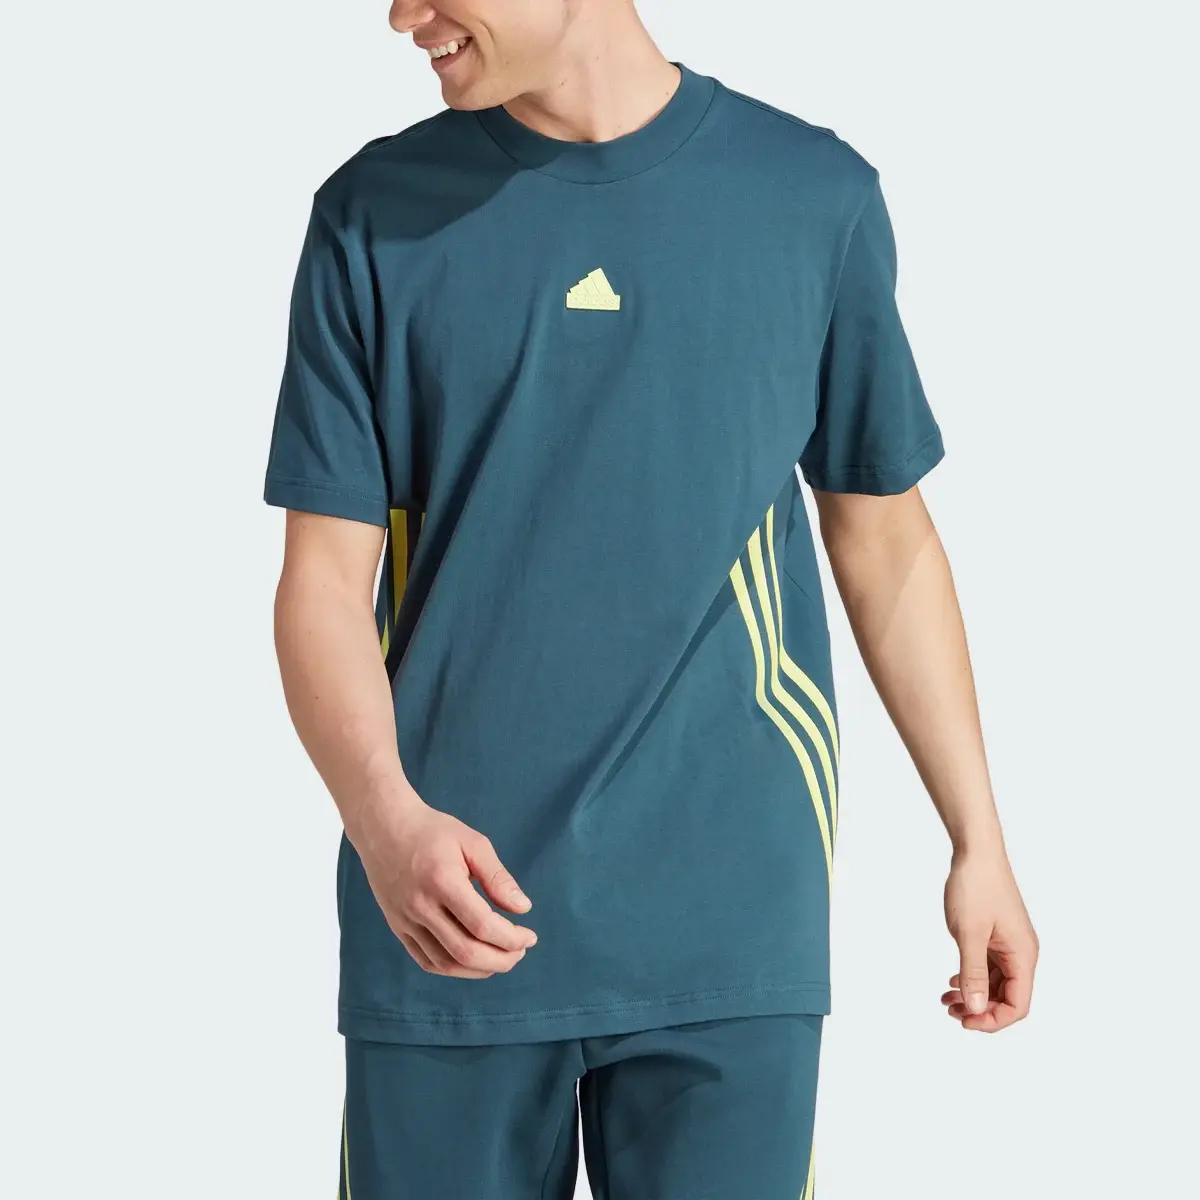 Adidas Future Icons 3-Stripes T-Shirt. 1